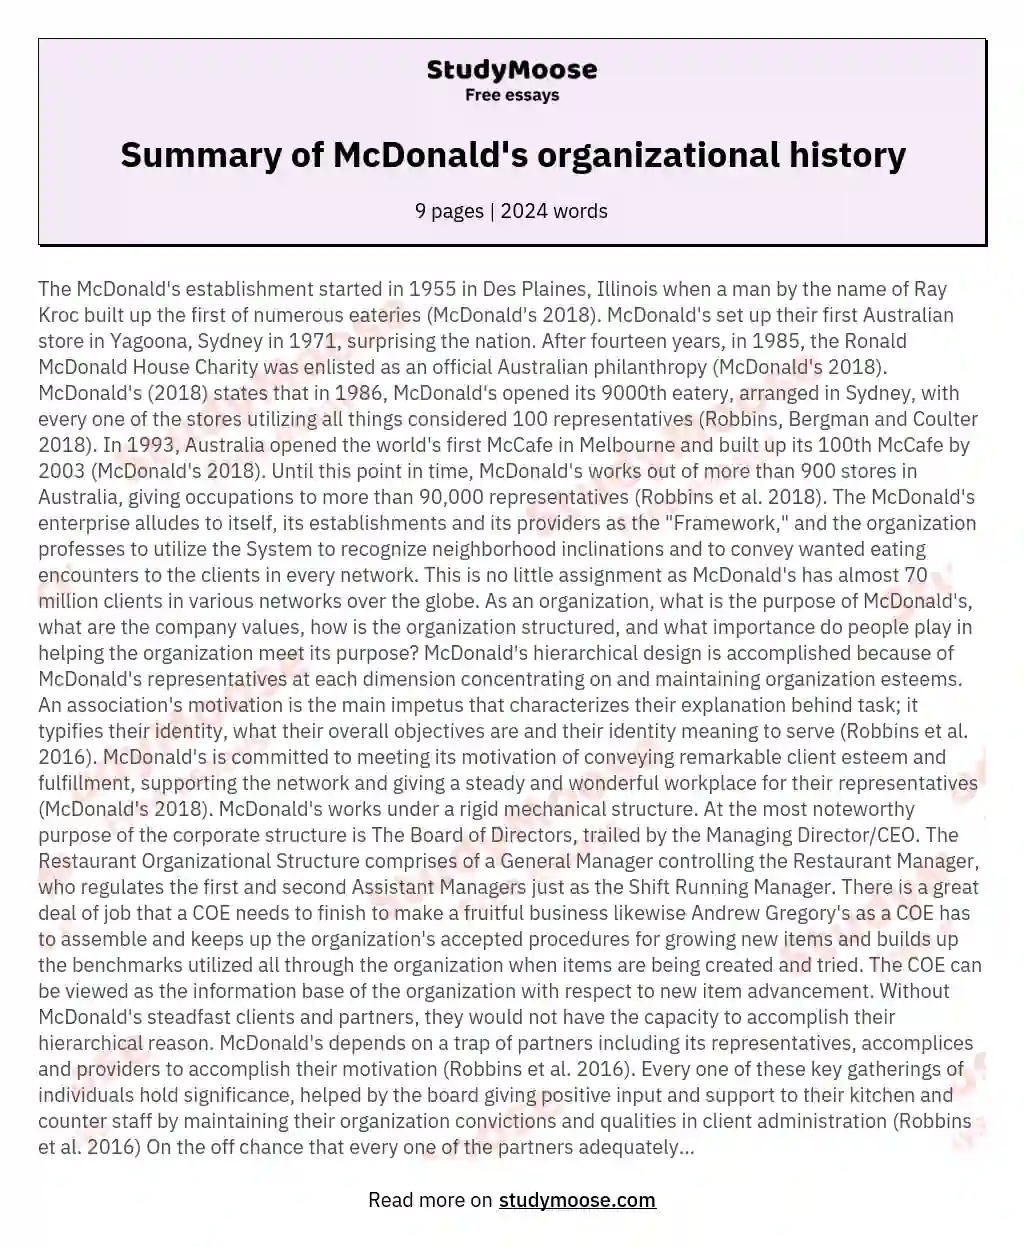 Summary of McDonald's organizational history essay